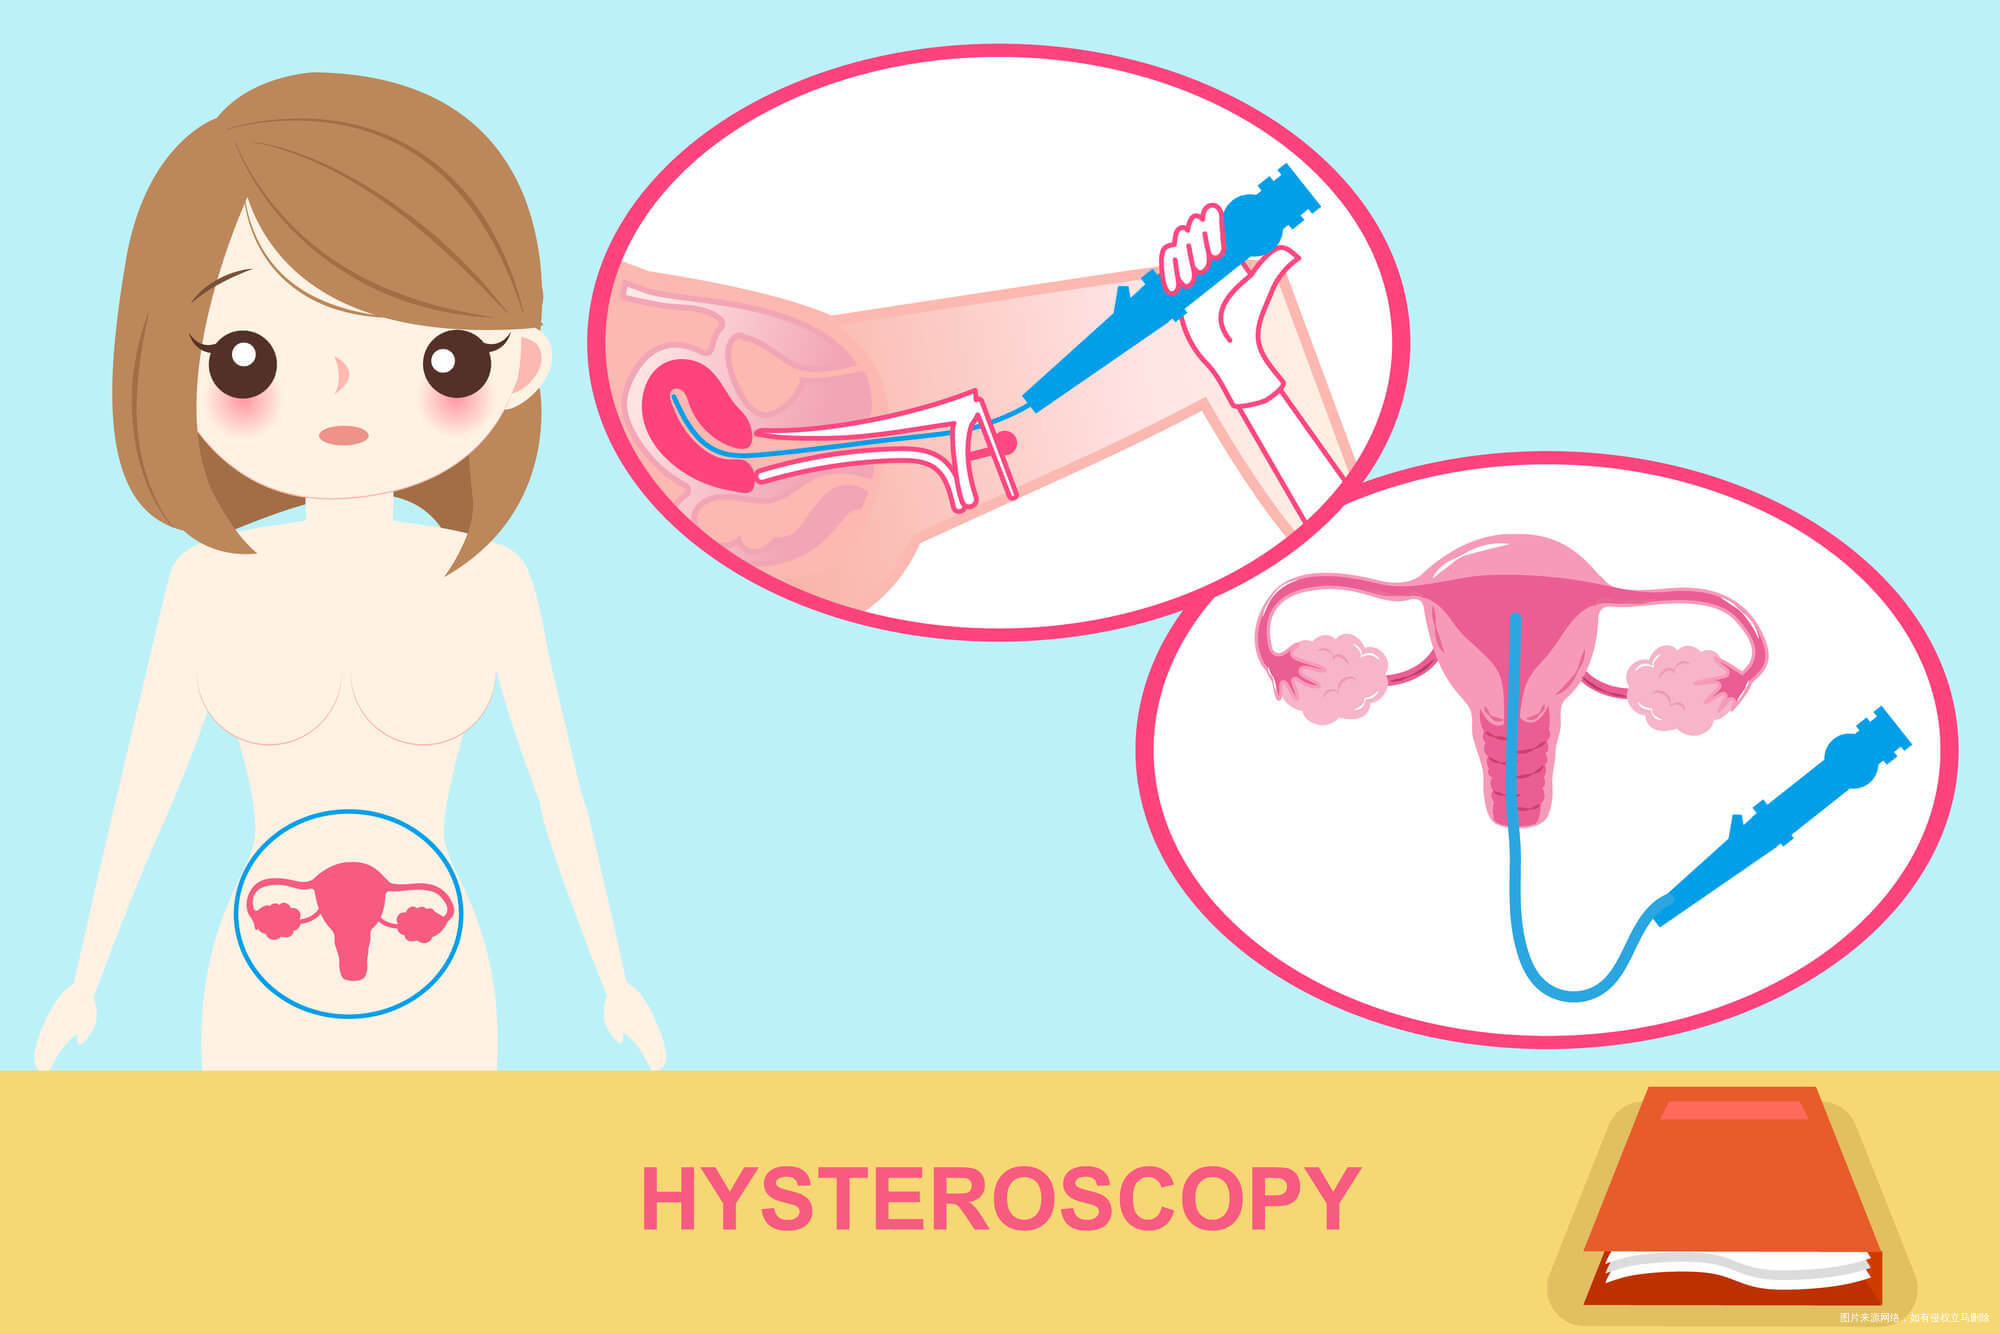 卵巢囊肿微创手术过程